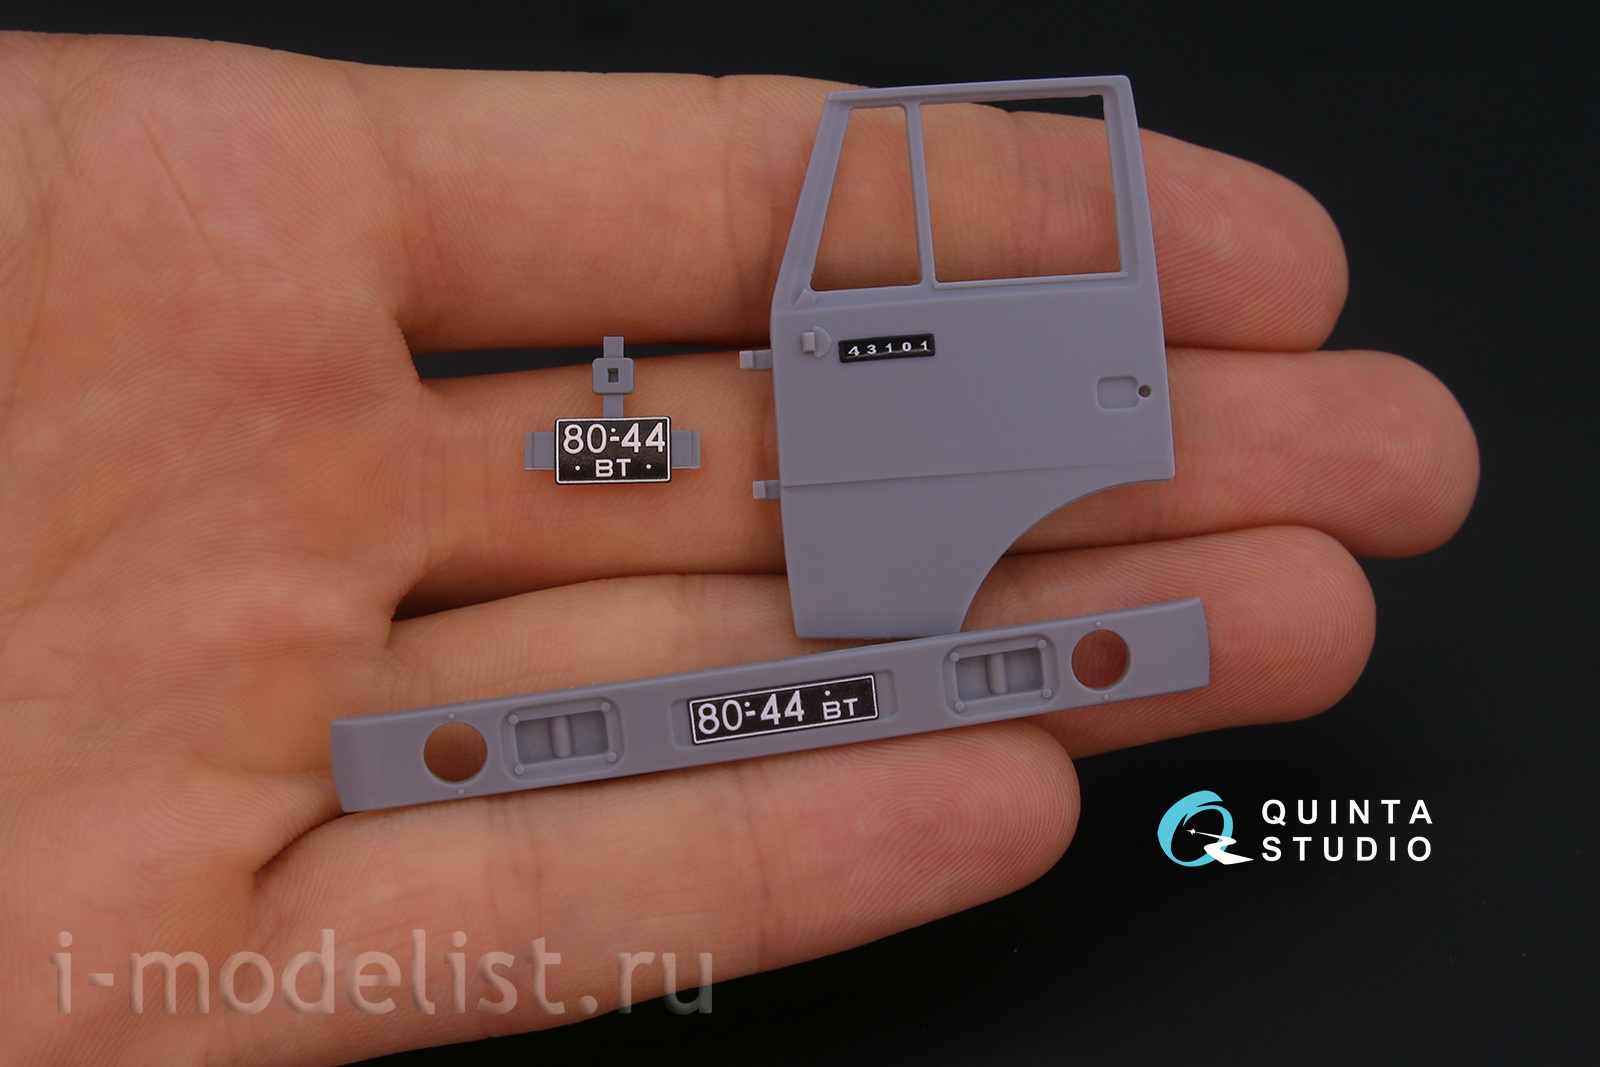 QD35017 Quinta Studio 1/35 3D Декаль интерьера кабины для К-4310 (для модели ICM)